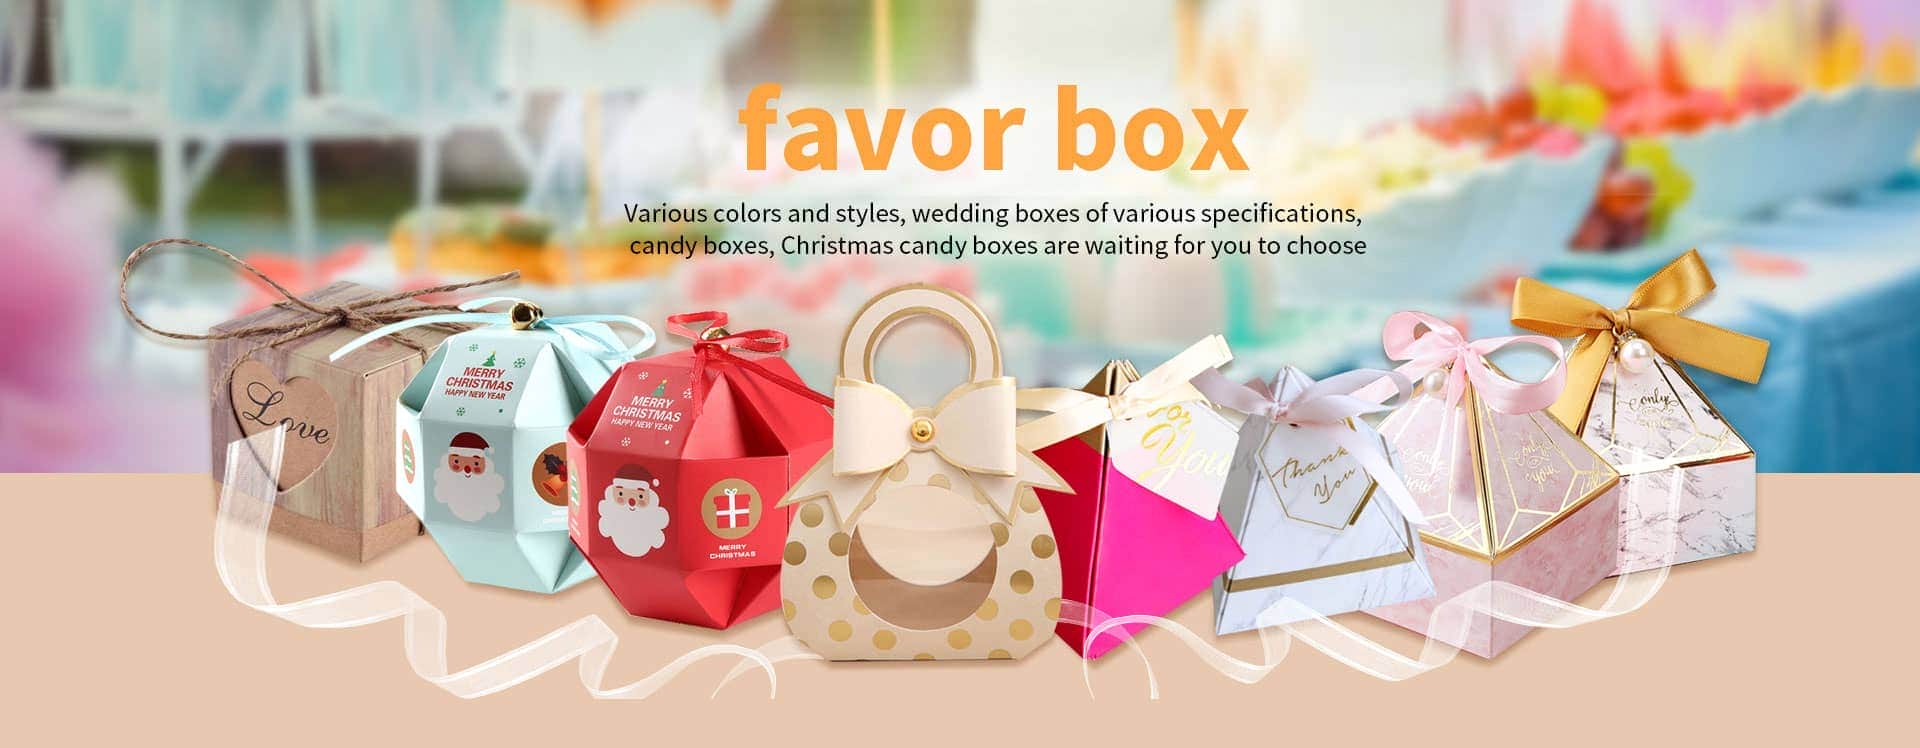 Wholesale Favor Box